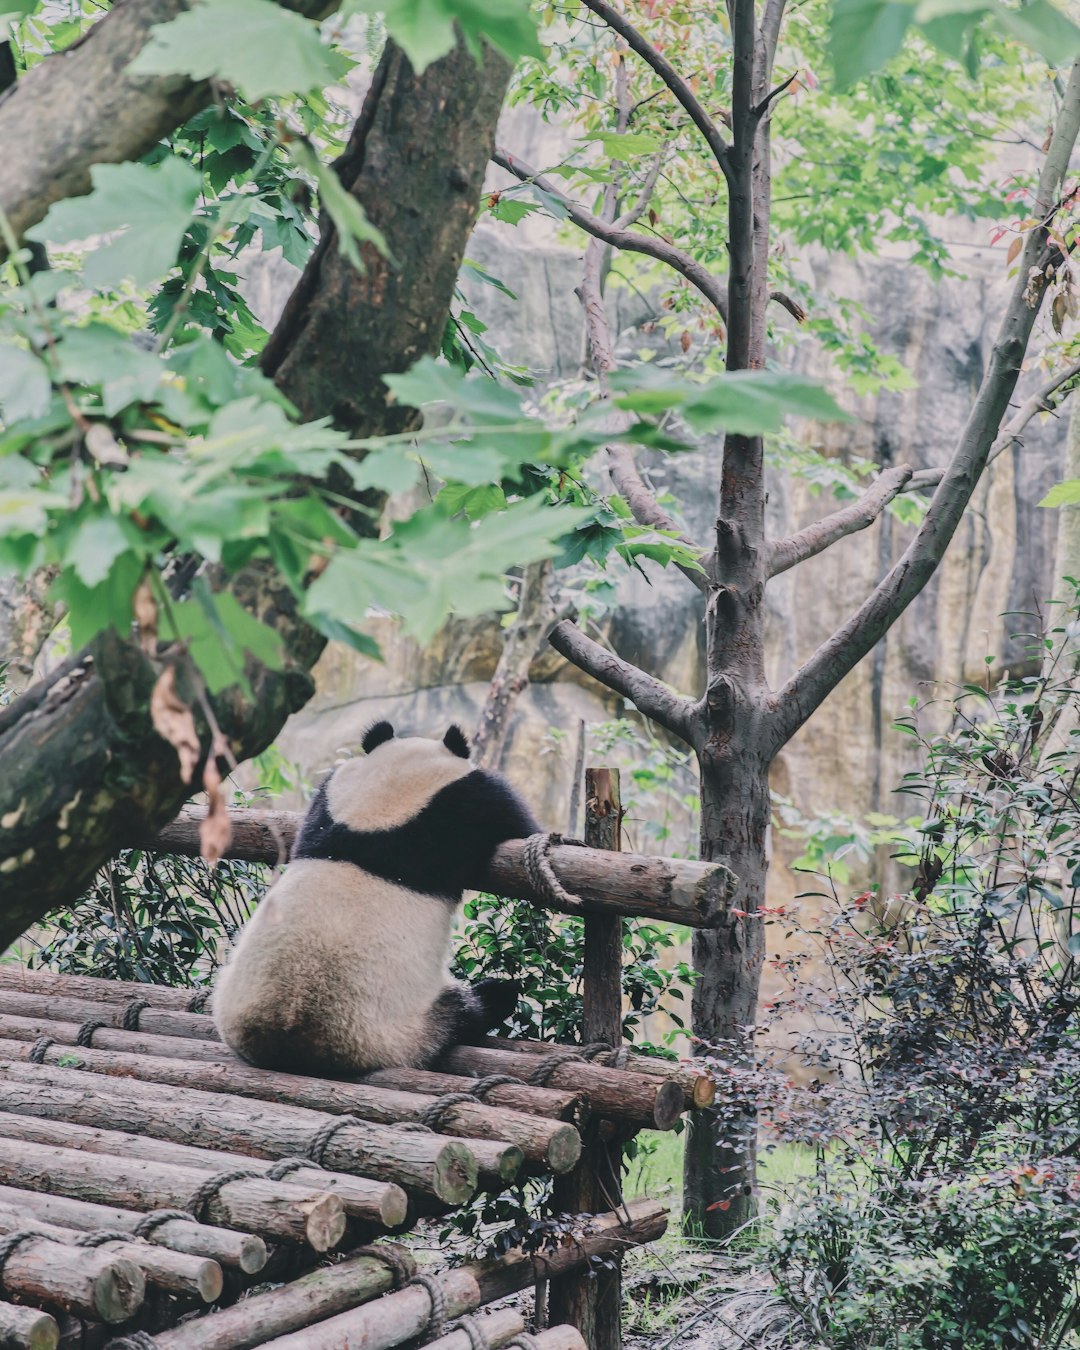 Nature reserve photo spot 9 Fu Qin Jie Bei Er Xiang Chengdu Panda Breeding Research Center